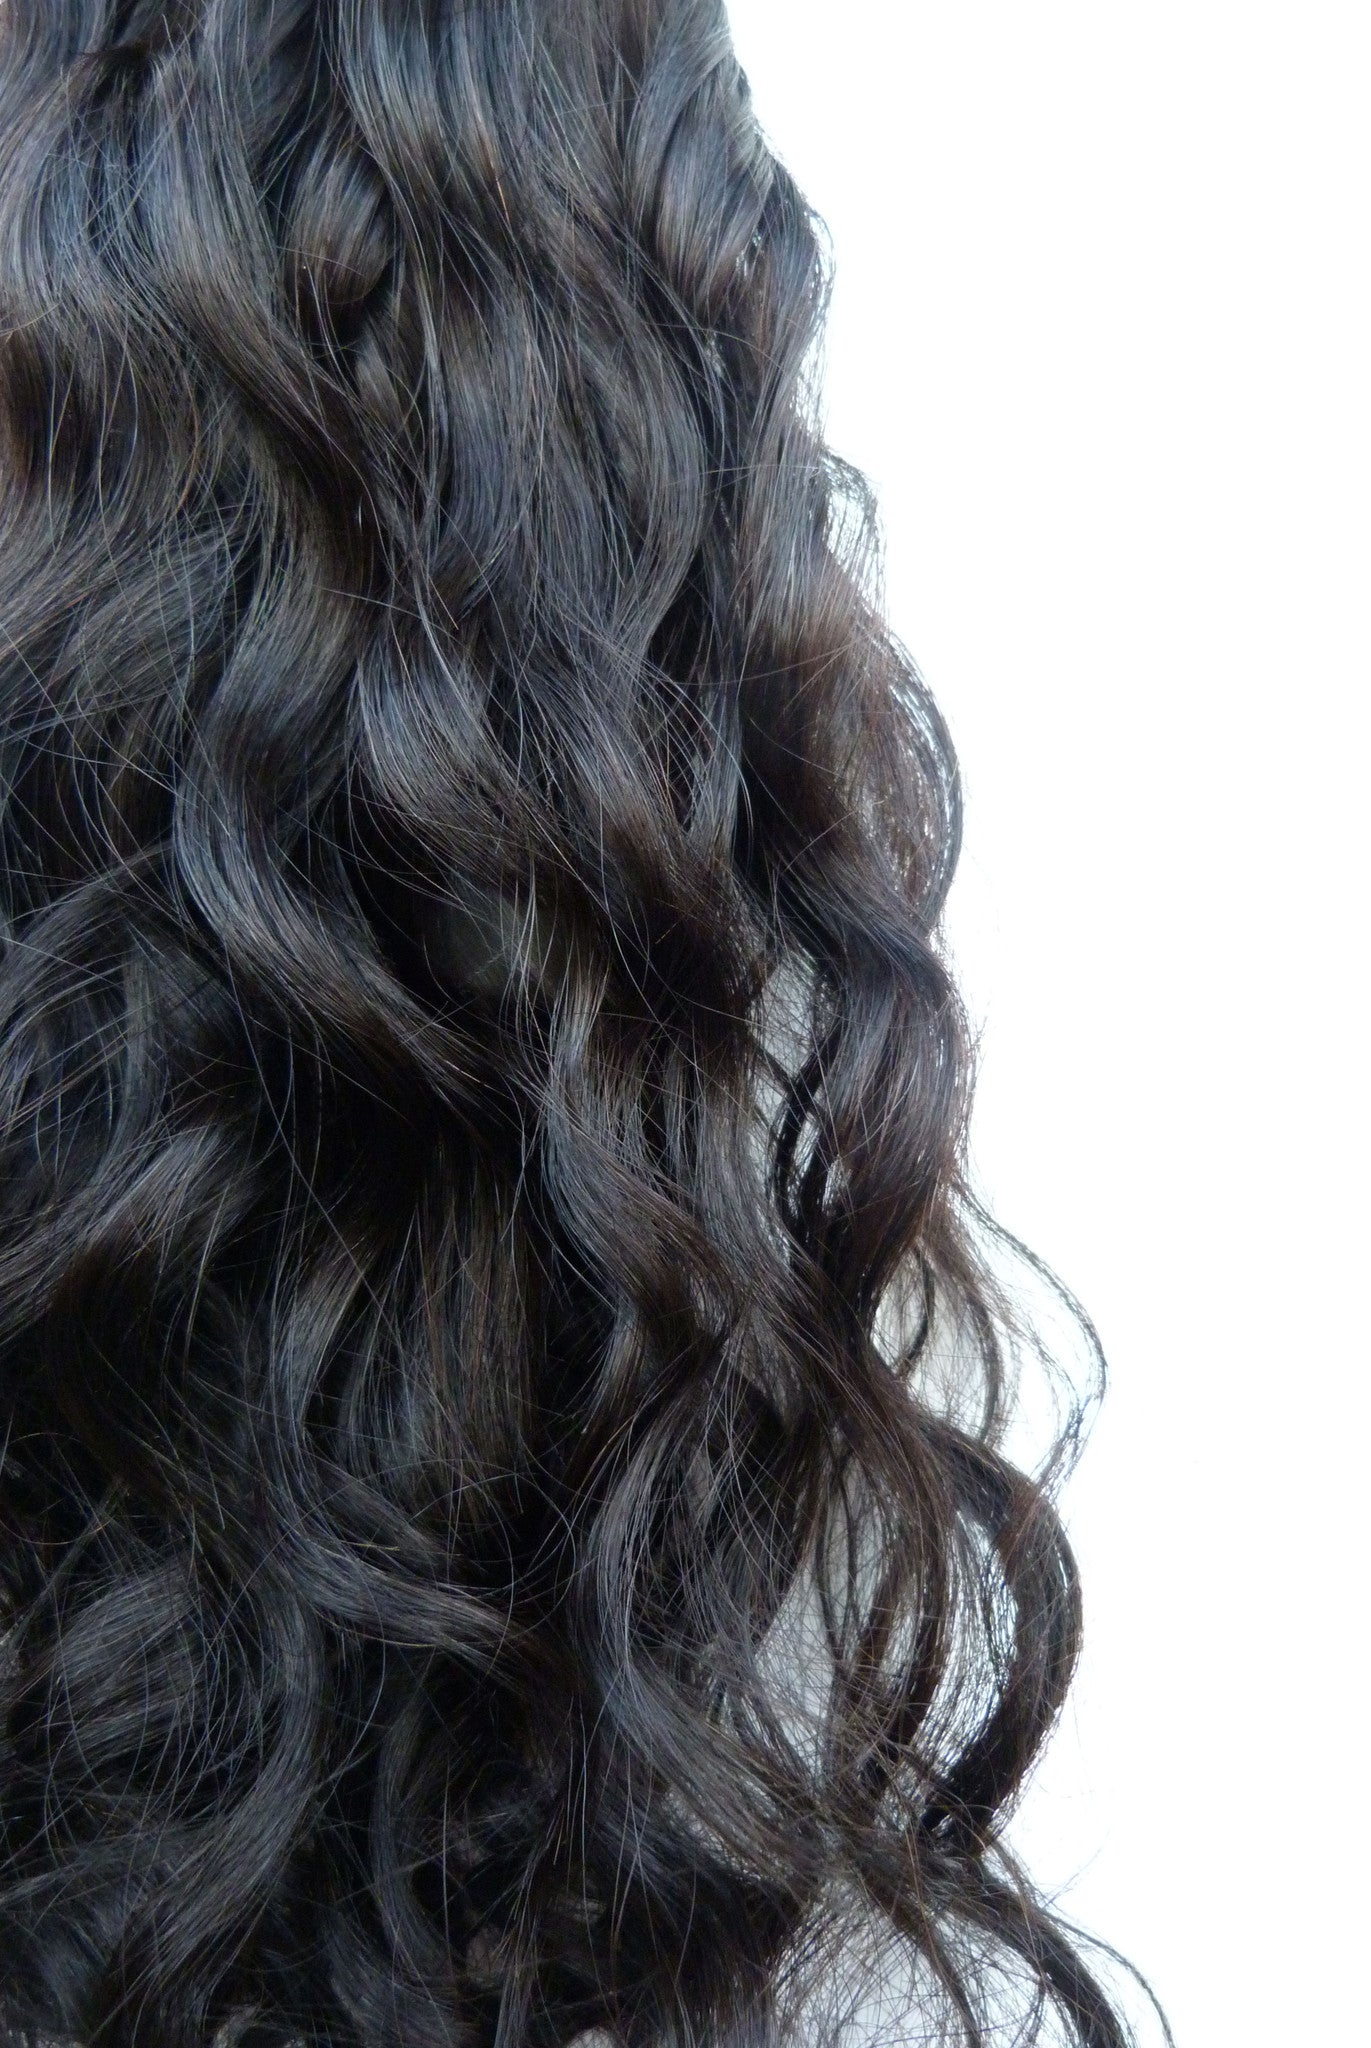 תוספות שיער אנושי בתולה ברזילאית - תוספות מיקרו לולאה-שיער ויופי בתולה, תוספות השיער הטובות ביותר, שיער אנושי בתול אמיתי.